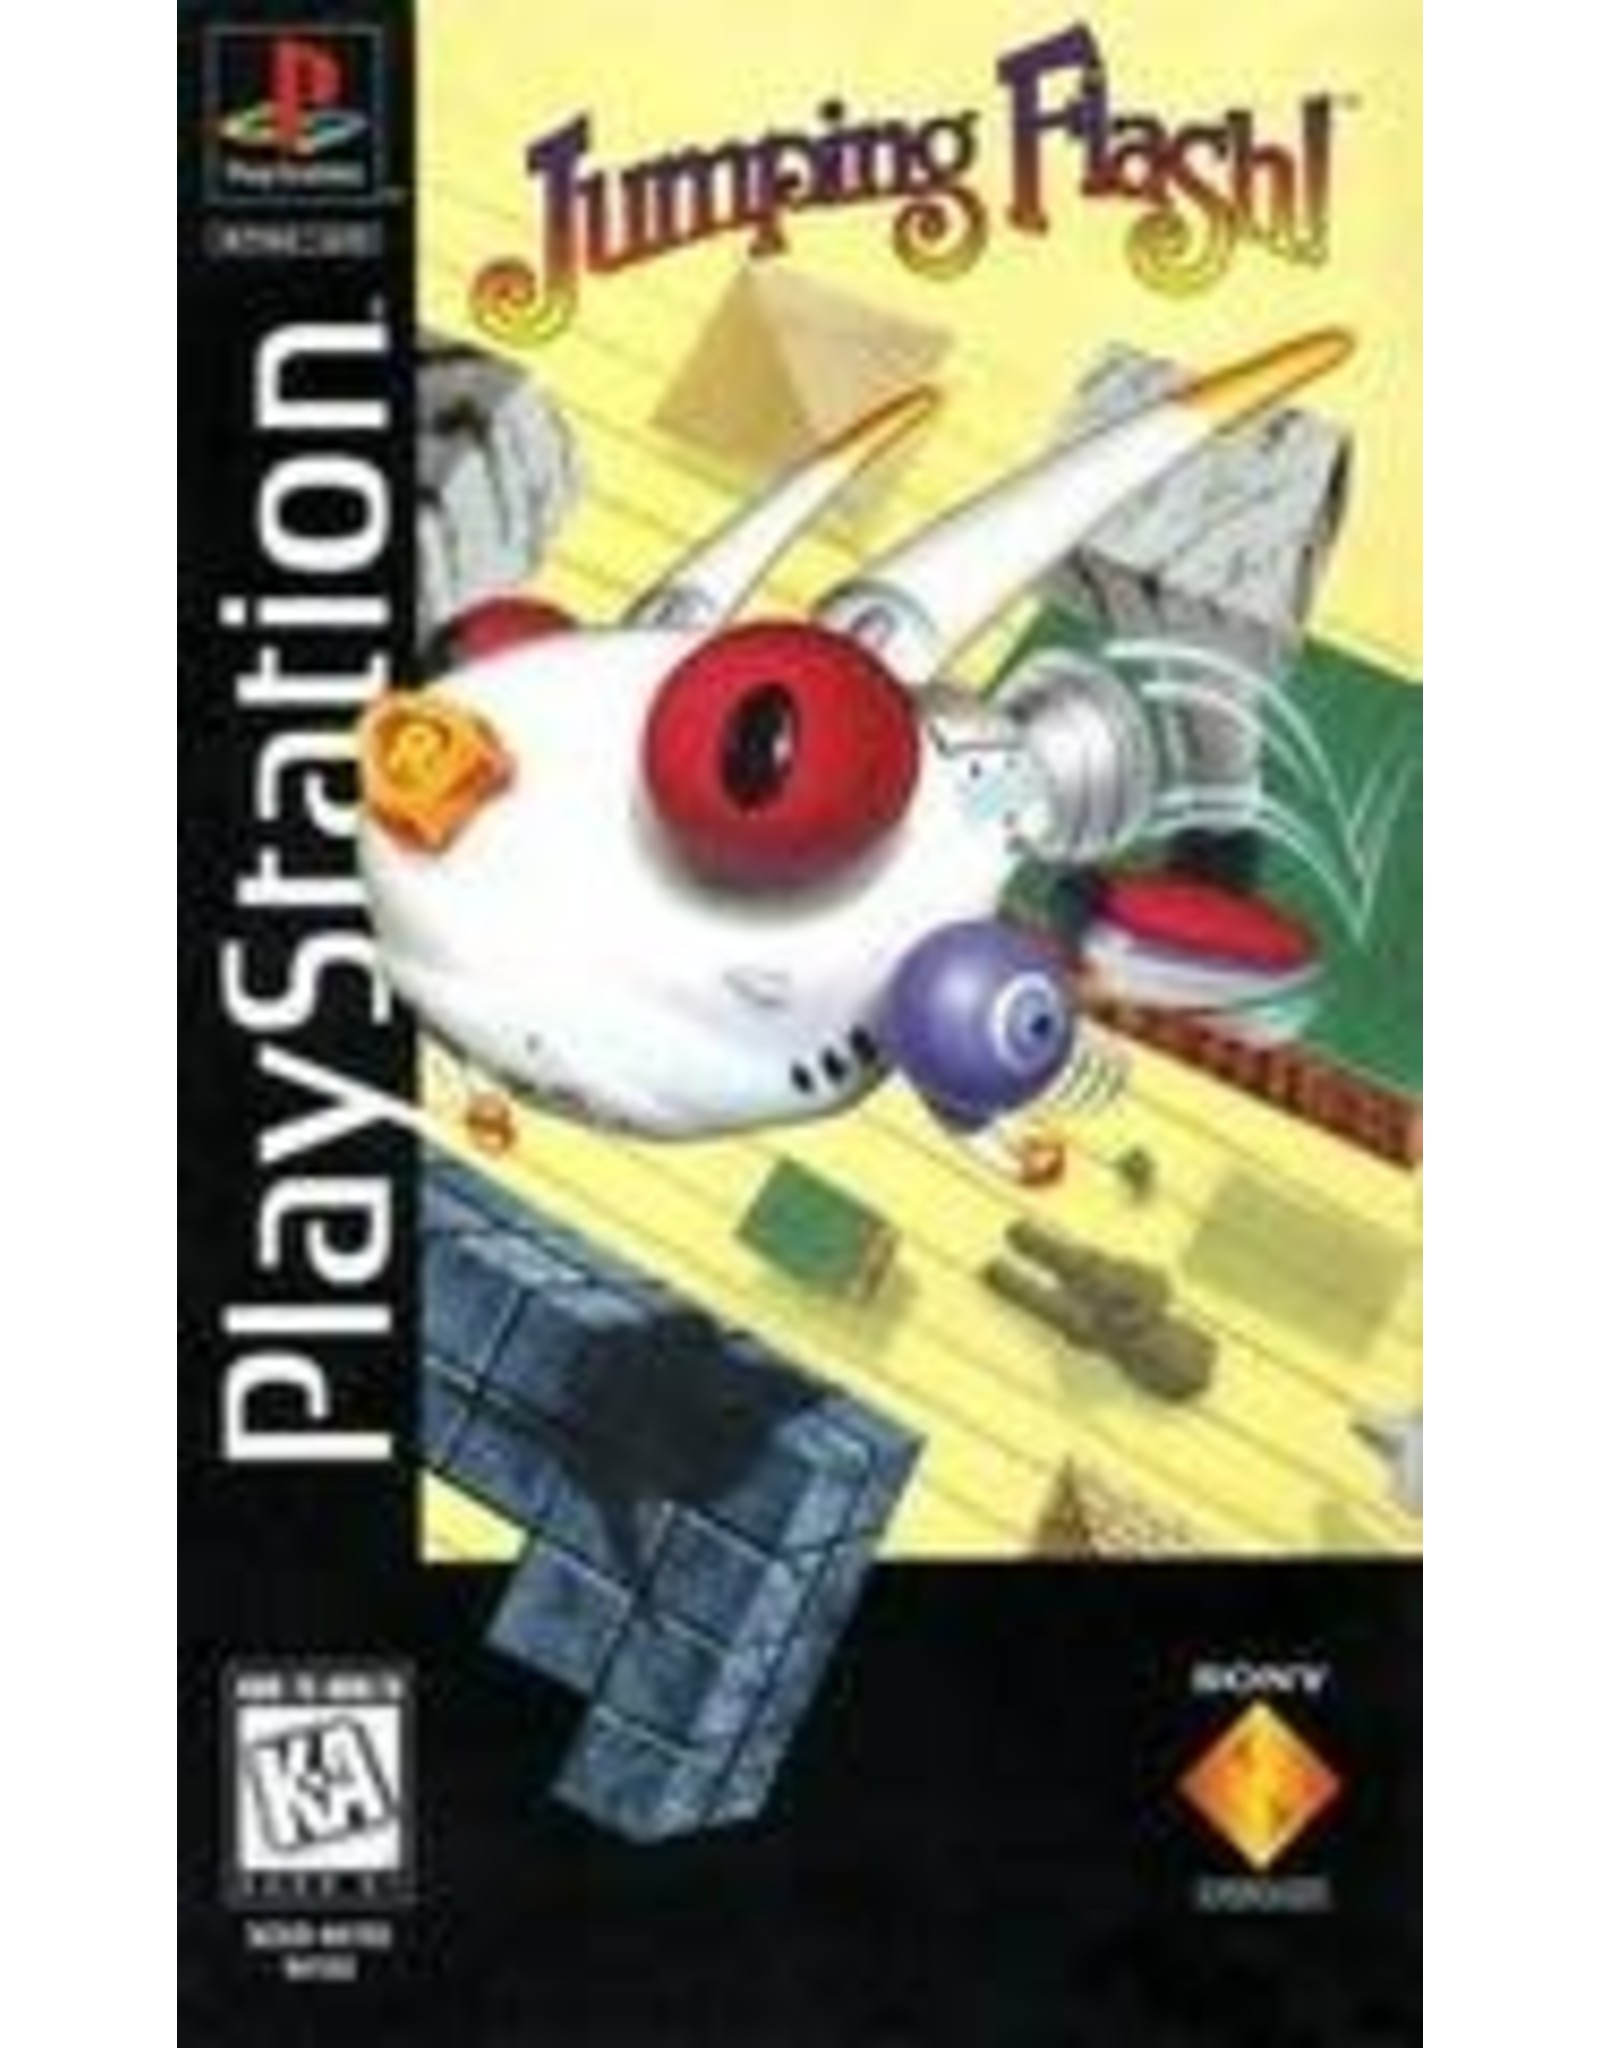 Playstation Jumping Flash (CiB, Long Box, Damaged Box and Manual, Old Glue on Disc Label)